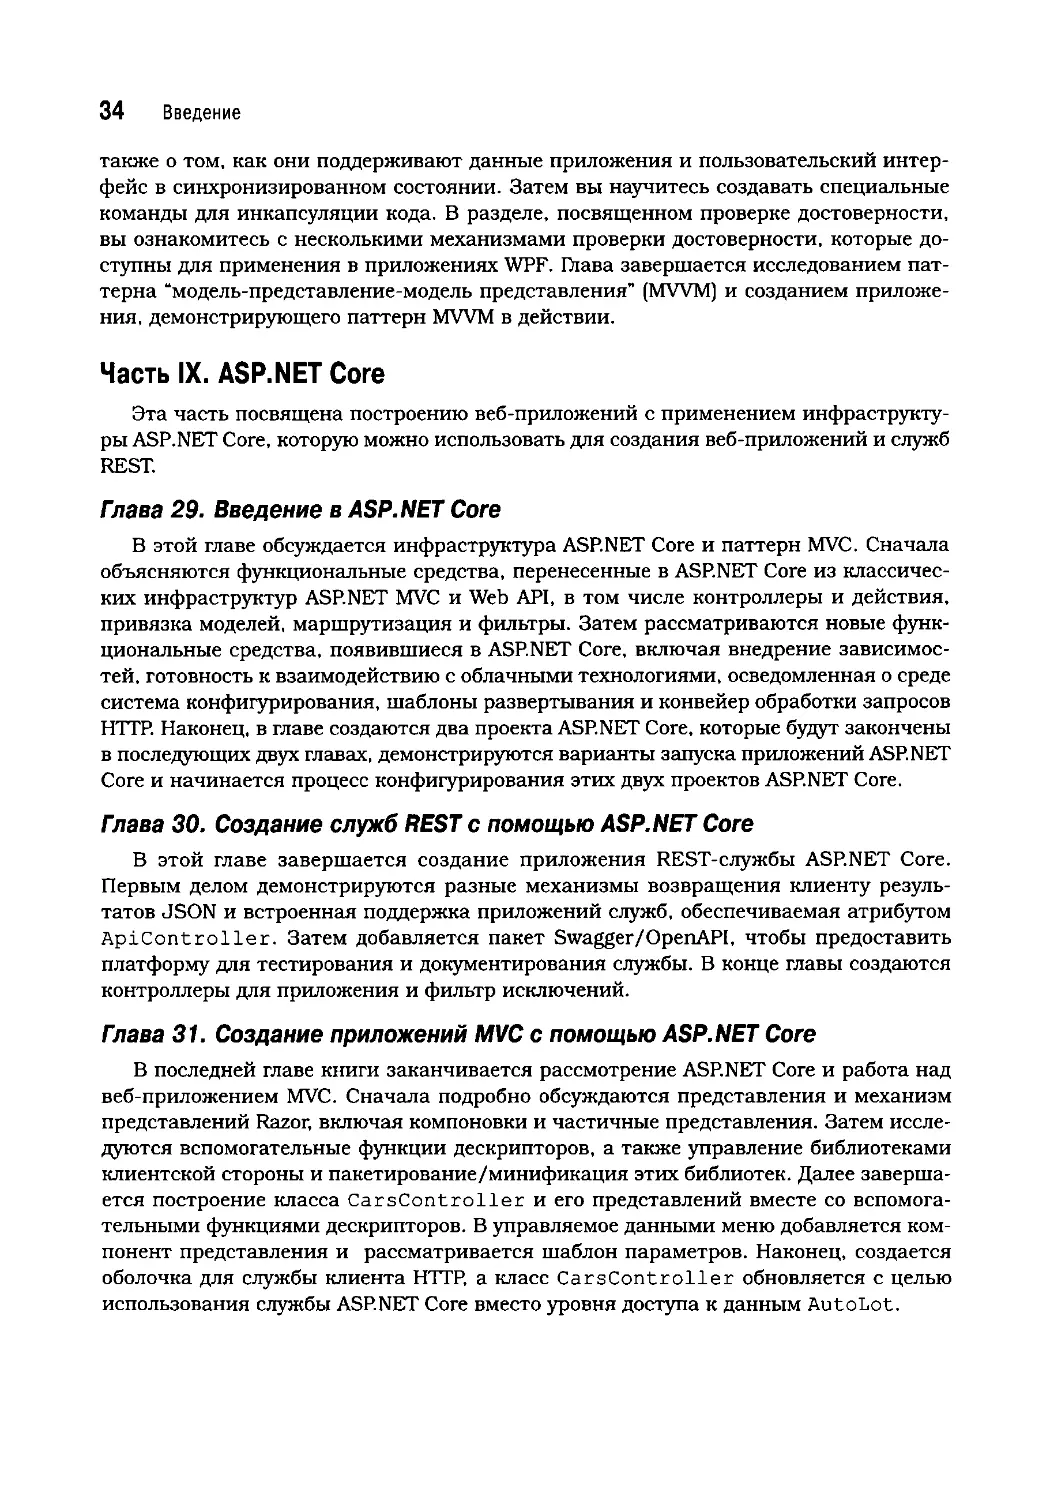 Часть IX. ASP.NET Core